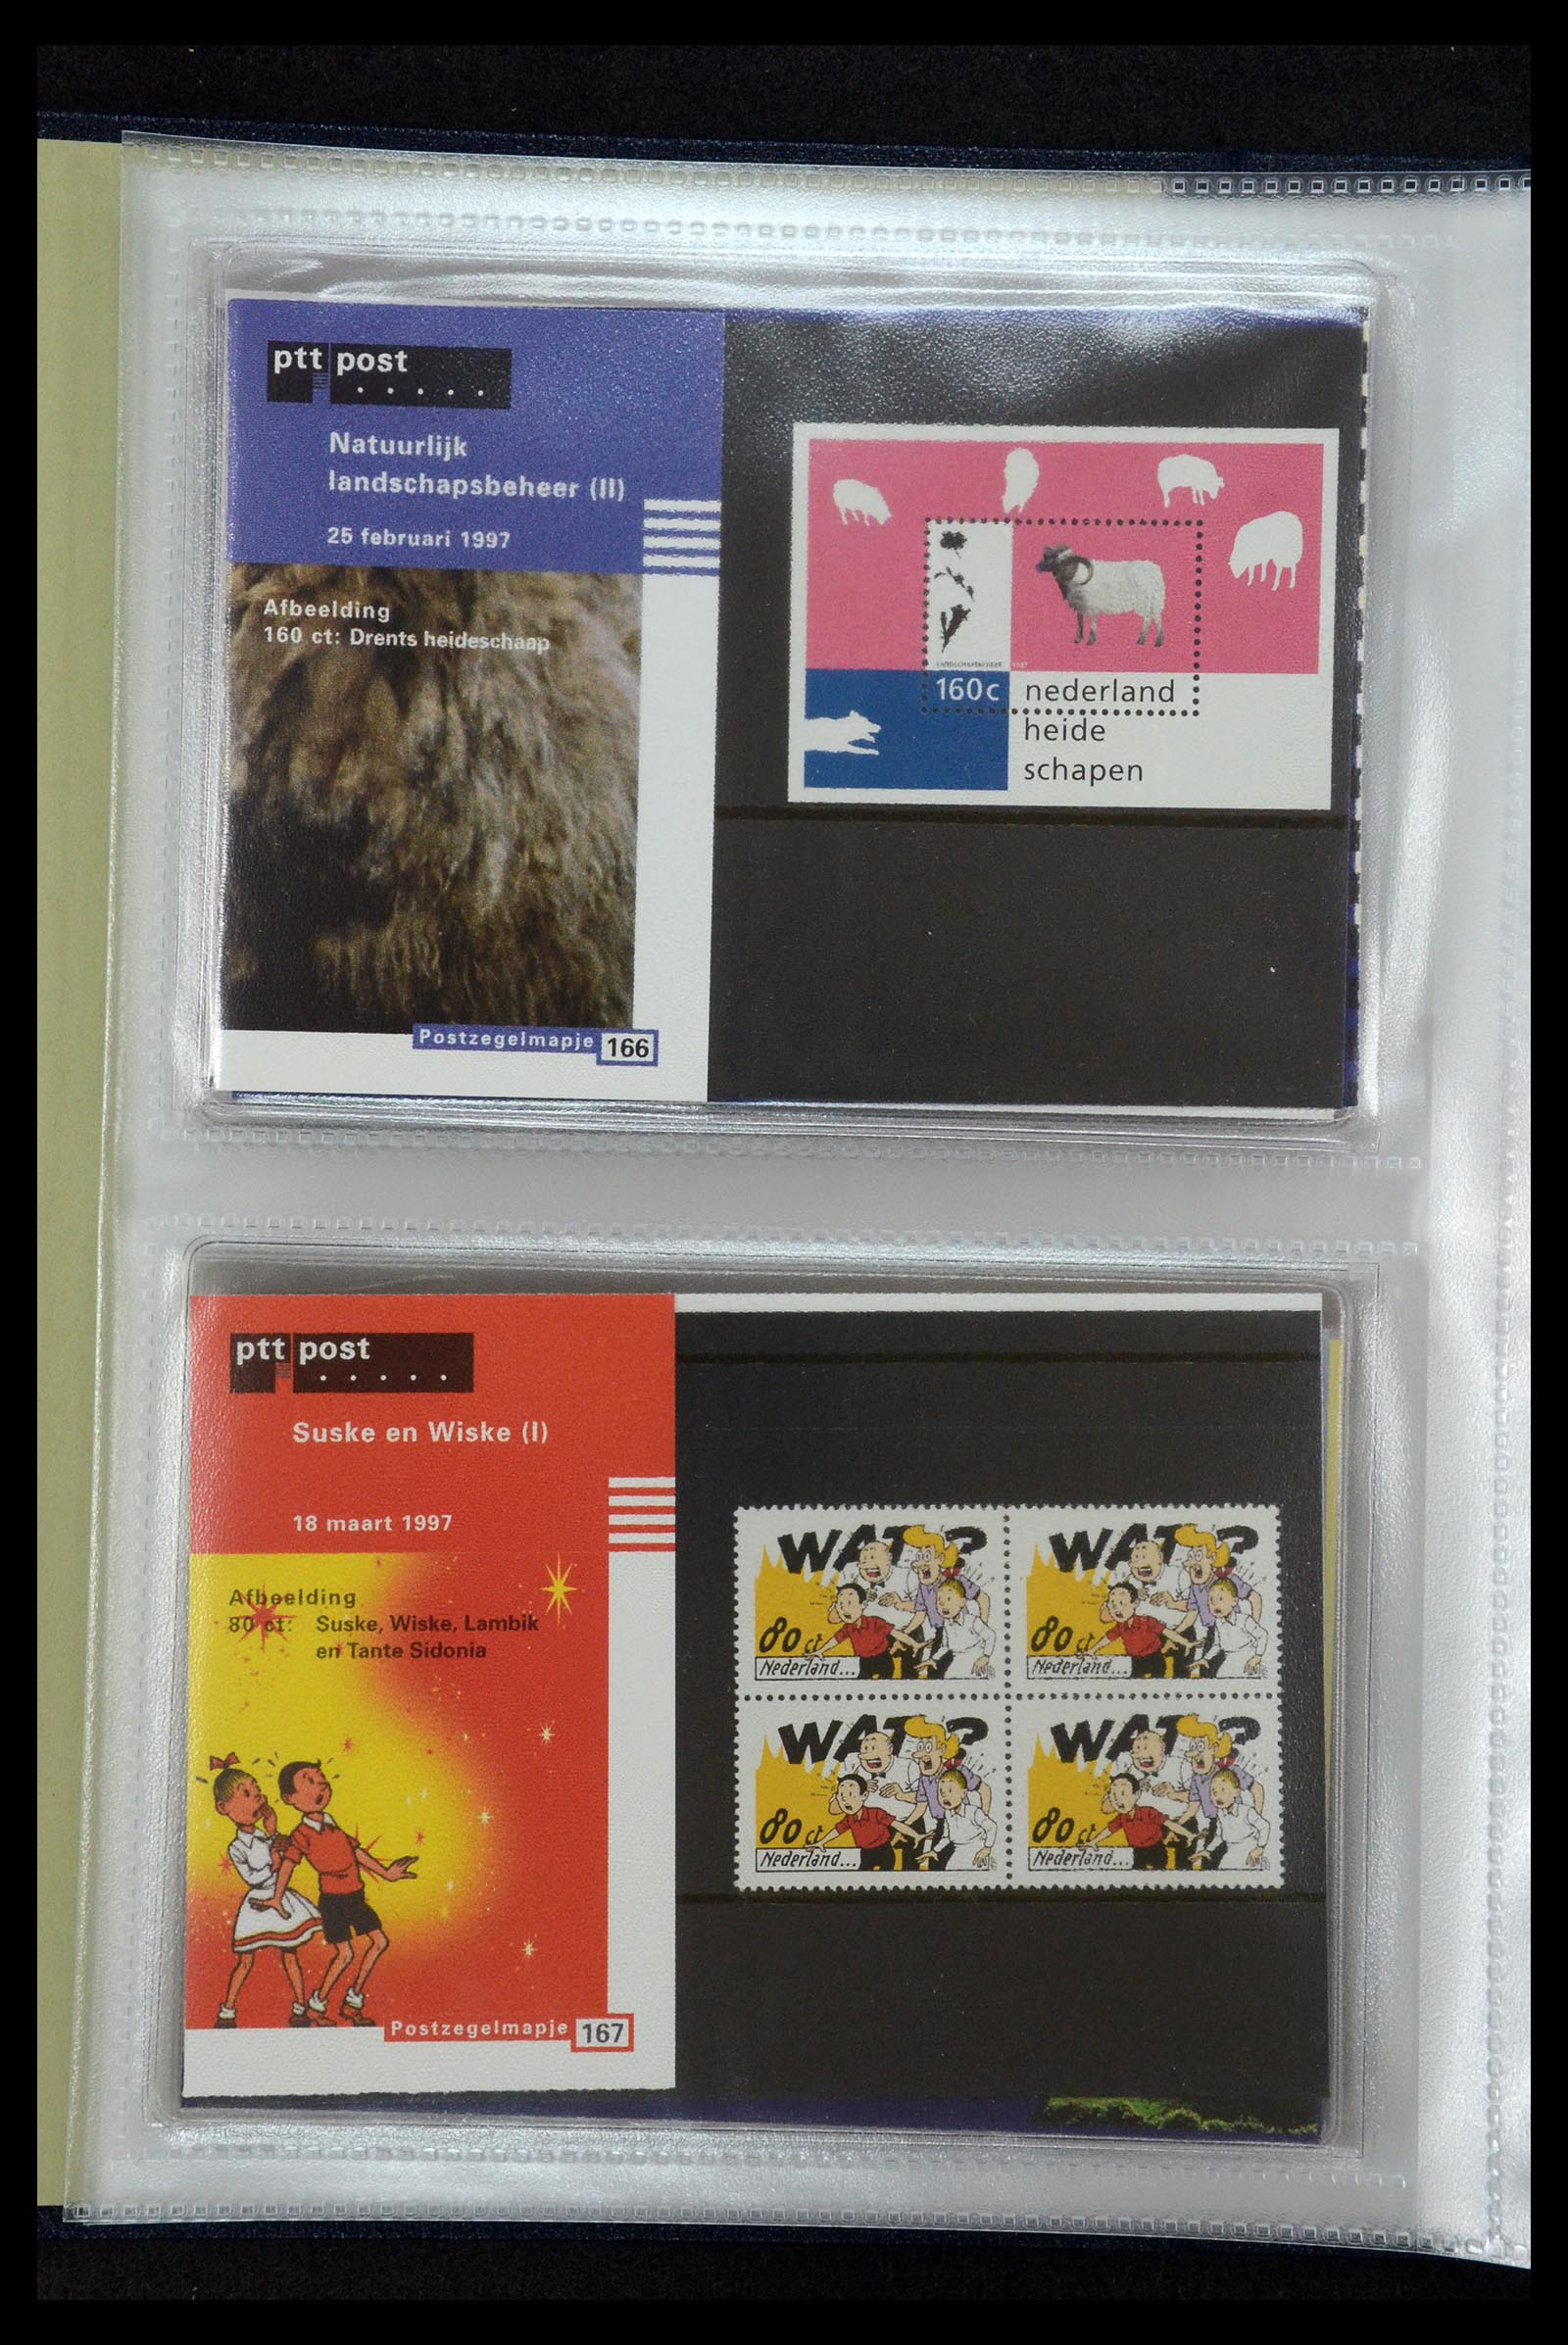 35144 086 - Stamp Collection 35144 Netherlands PTT presentation packs 1982-2021!